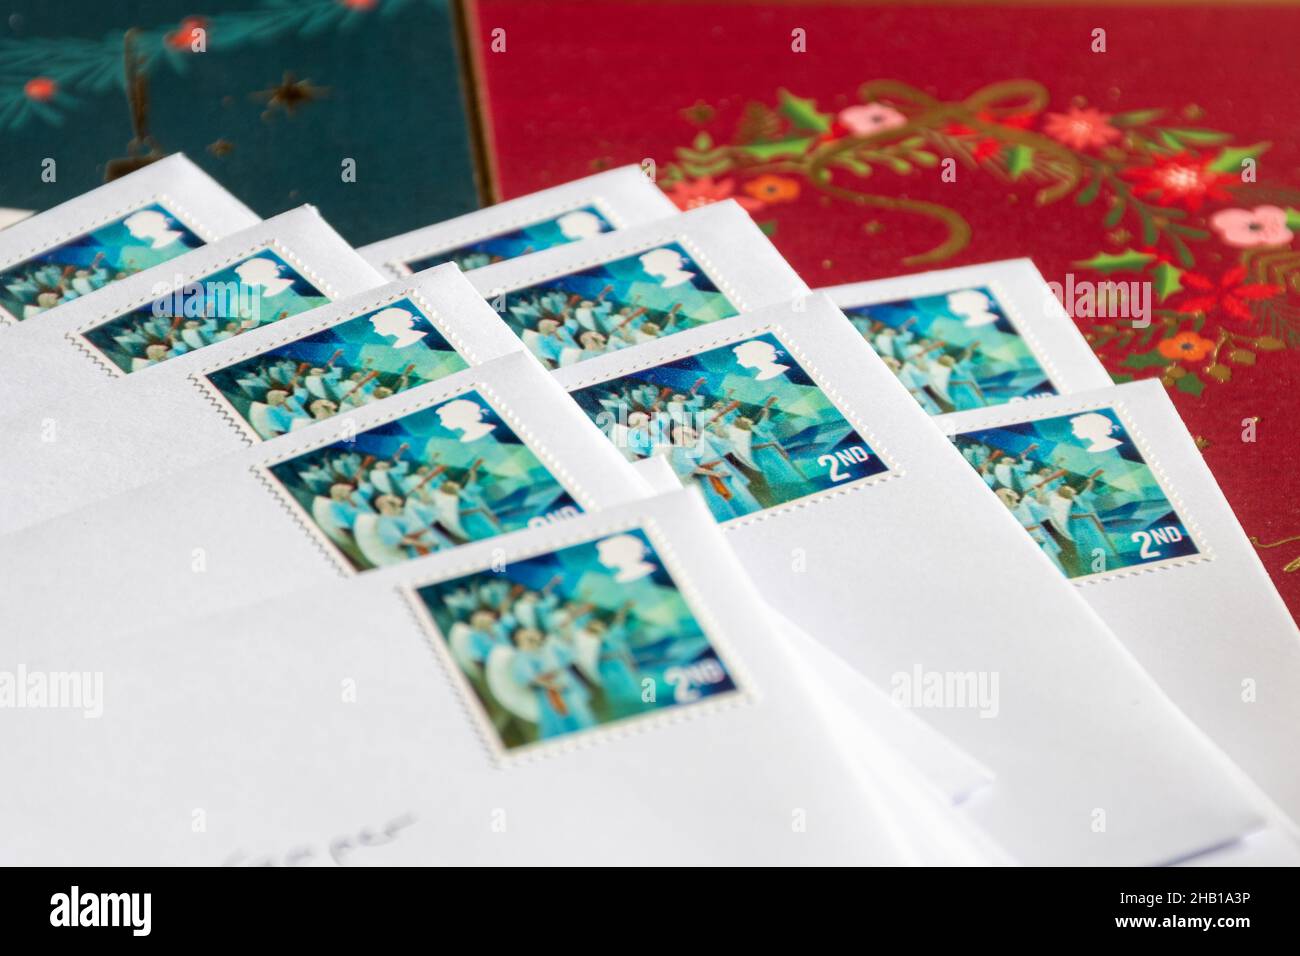 Weihnachtskarten geschrieben, versiegelt in Umschlägen mit Weihnachtsmarken der Klasse 2nd, versandbereit, UK. Letzter Mailing-Tag 18th Dezember Stockfoto